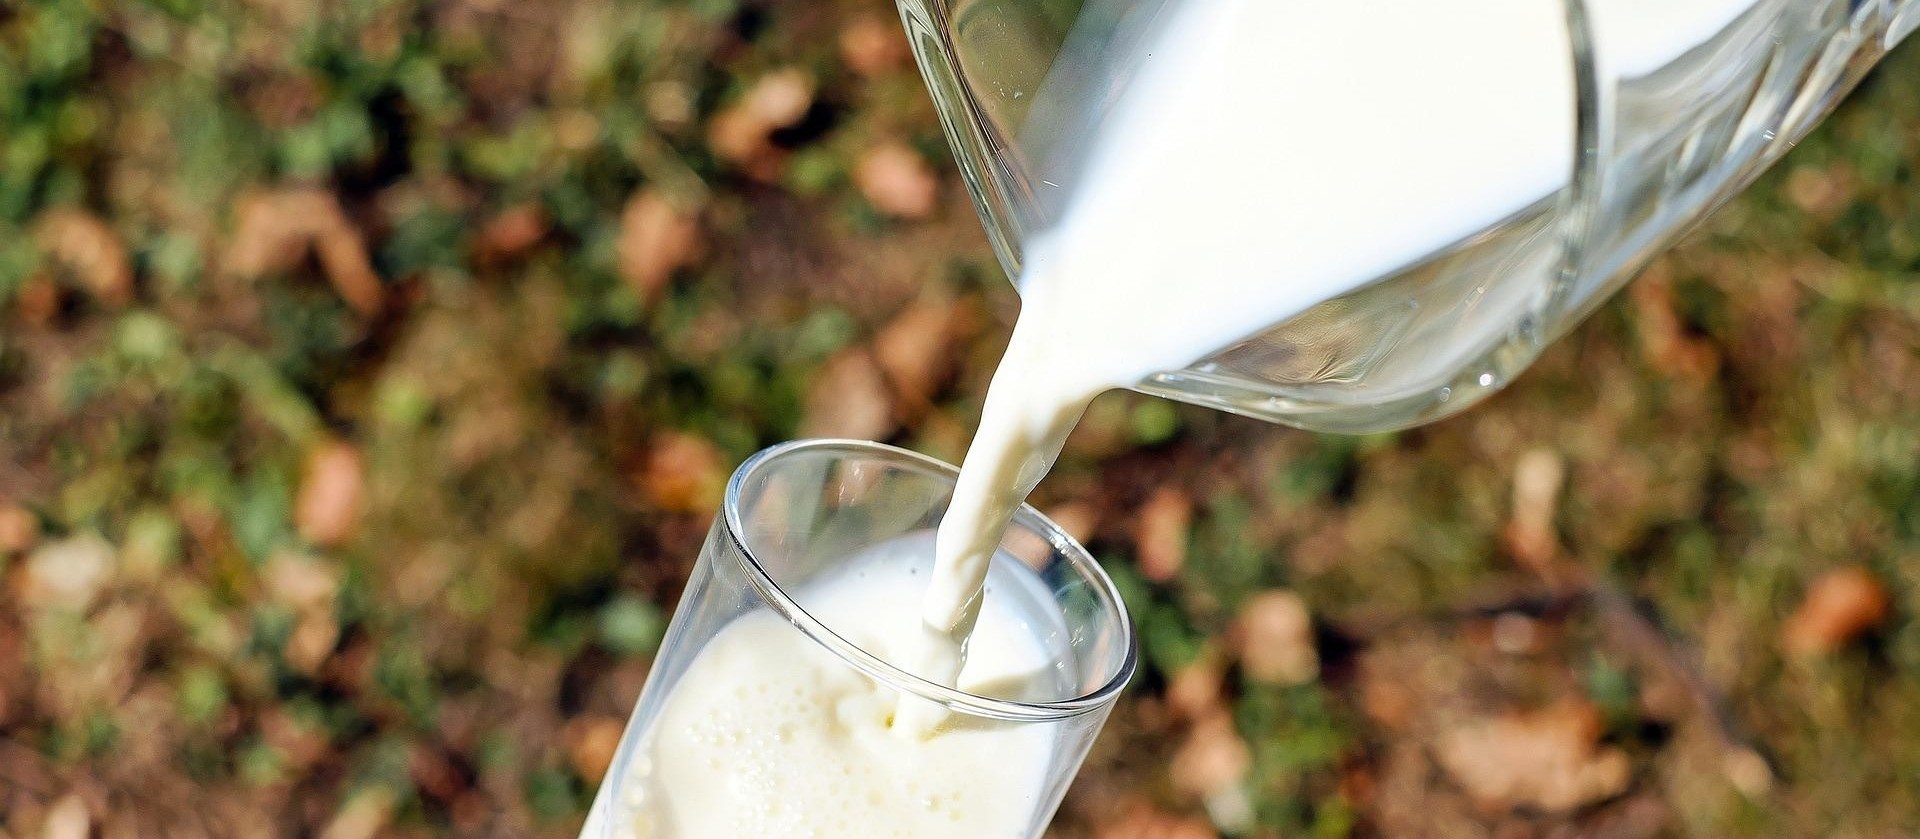 Produtos derivados do leite tiveram alta  no mês de julho